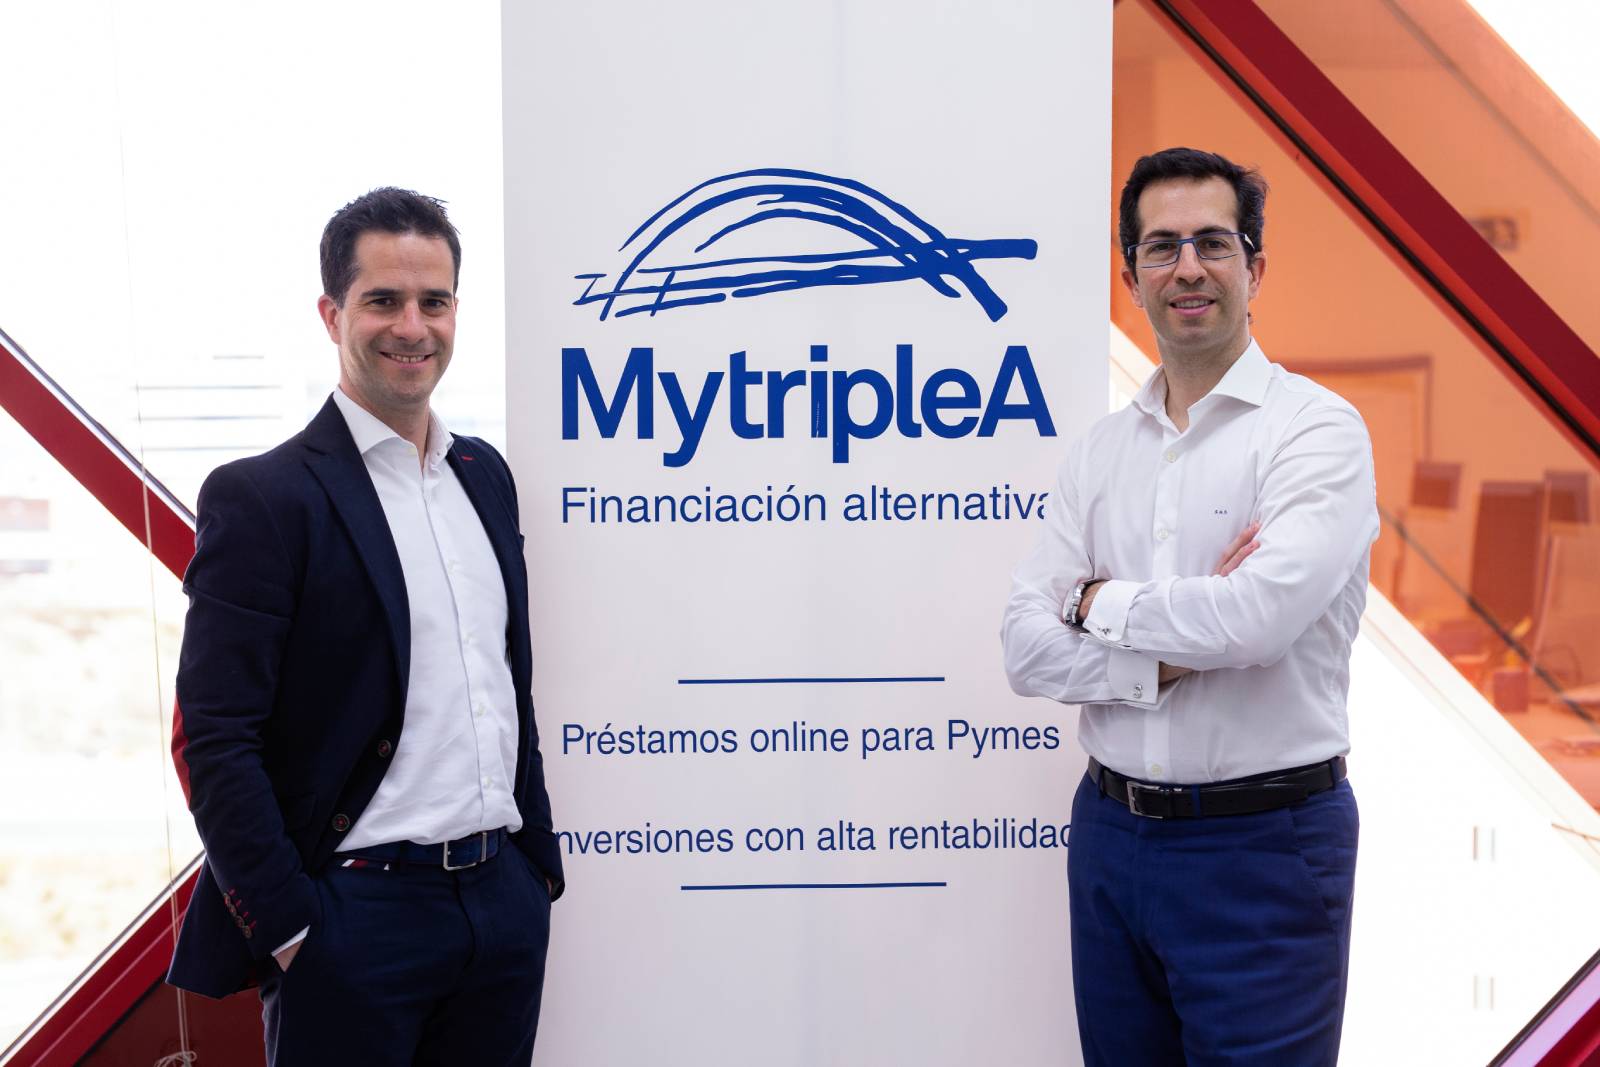 Jorge y Sergio Antón, fundadores de Mytriple A